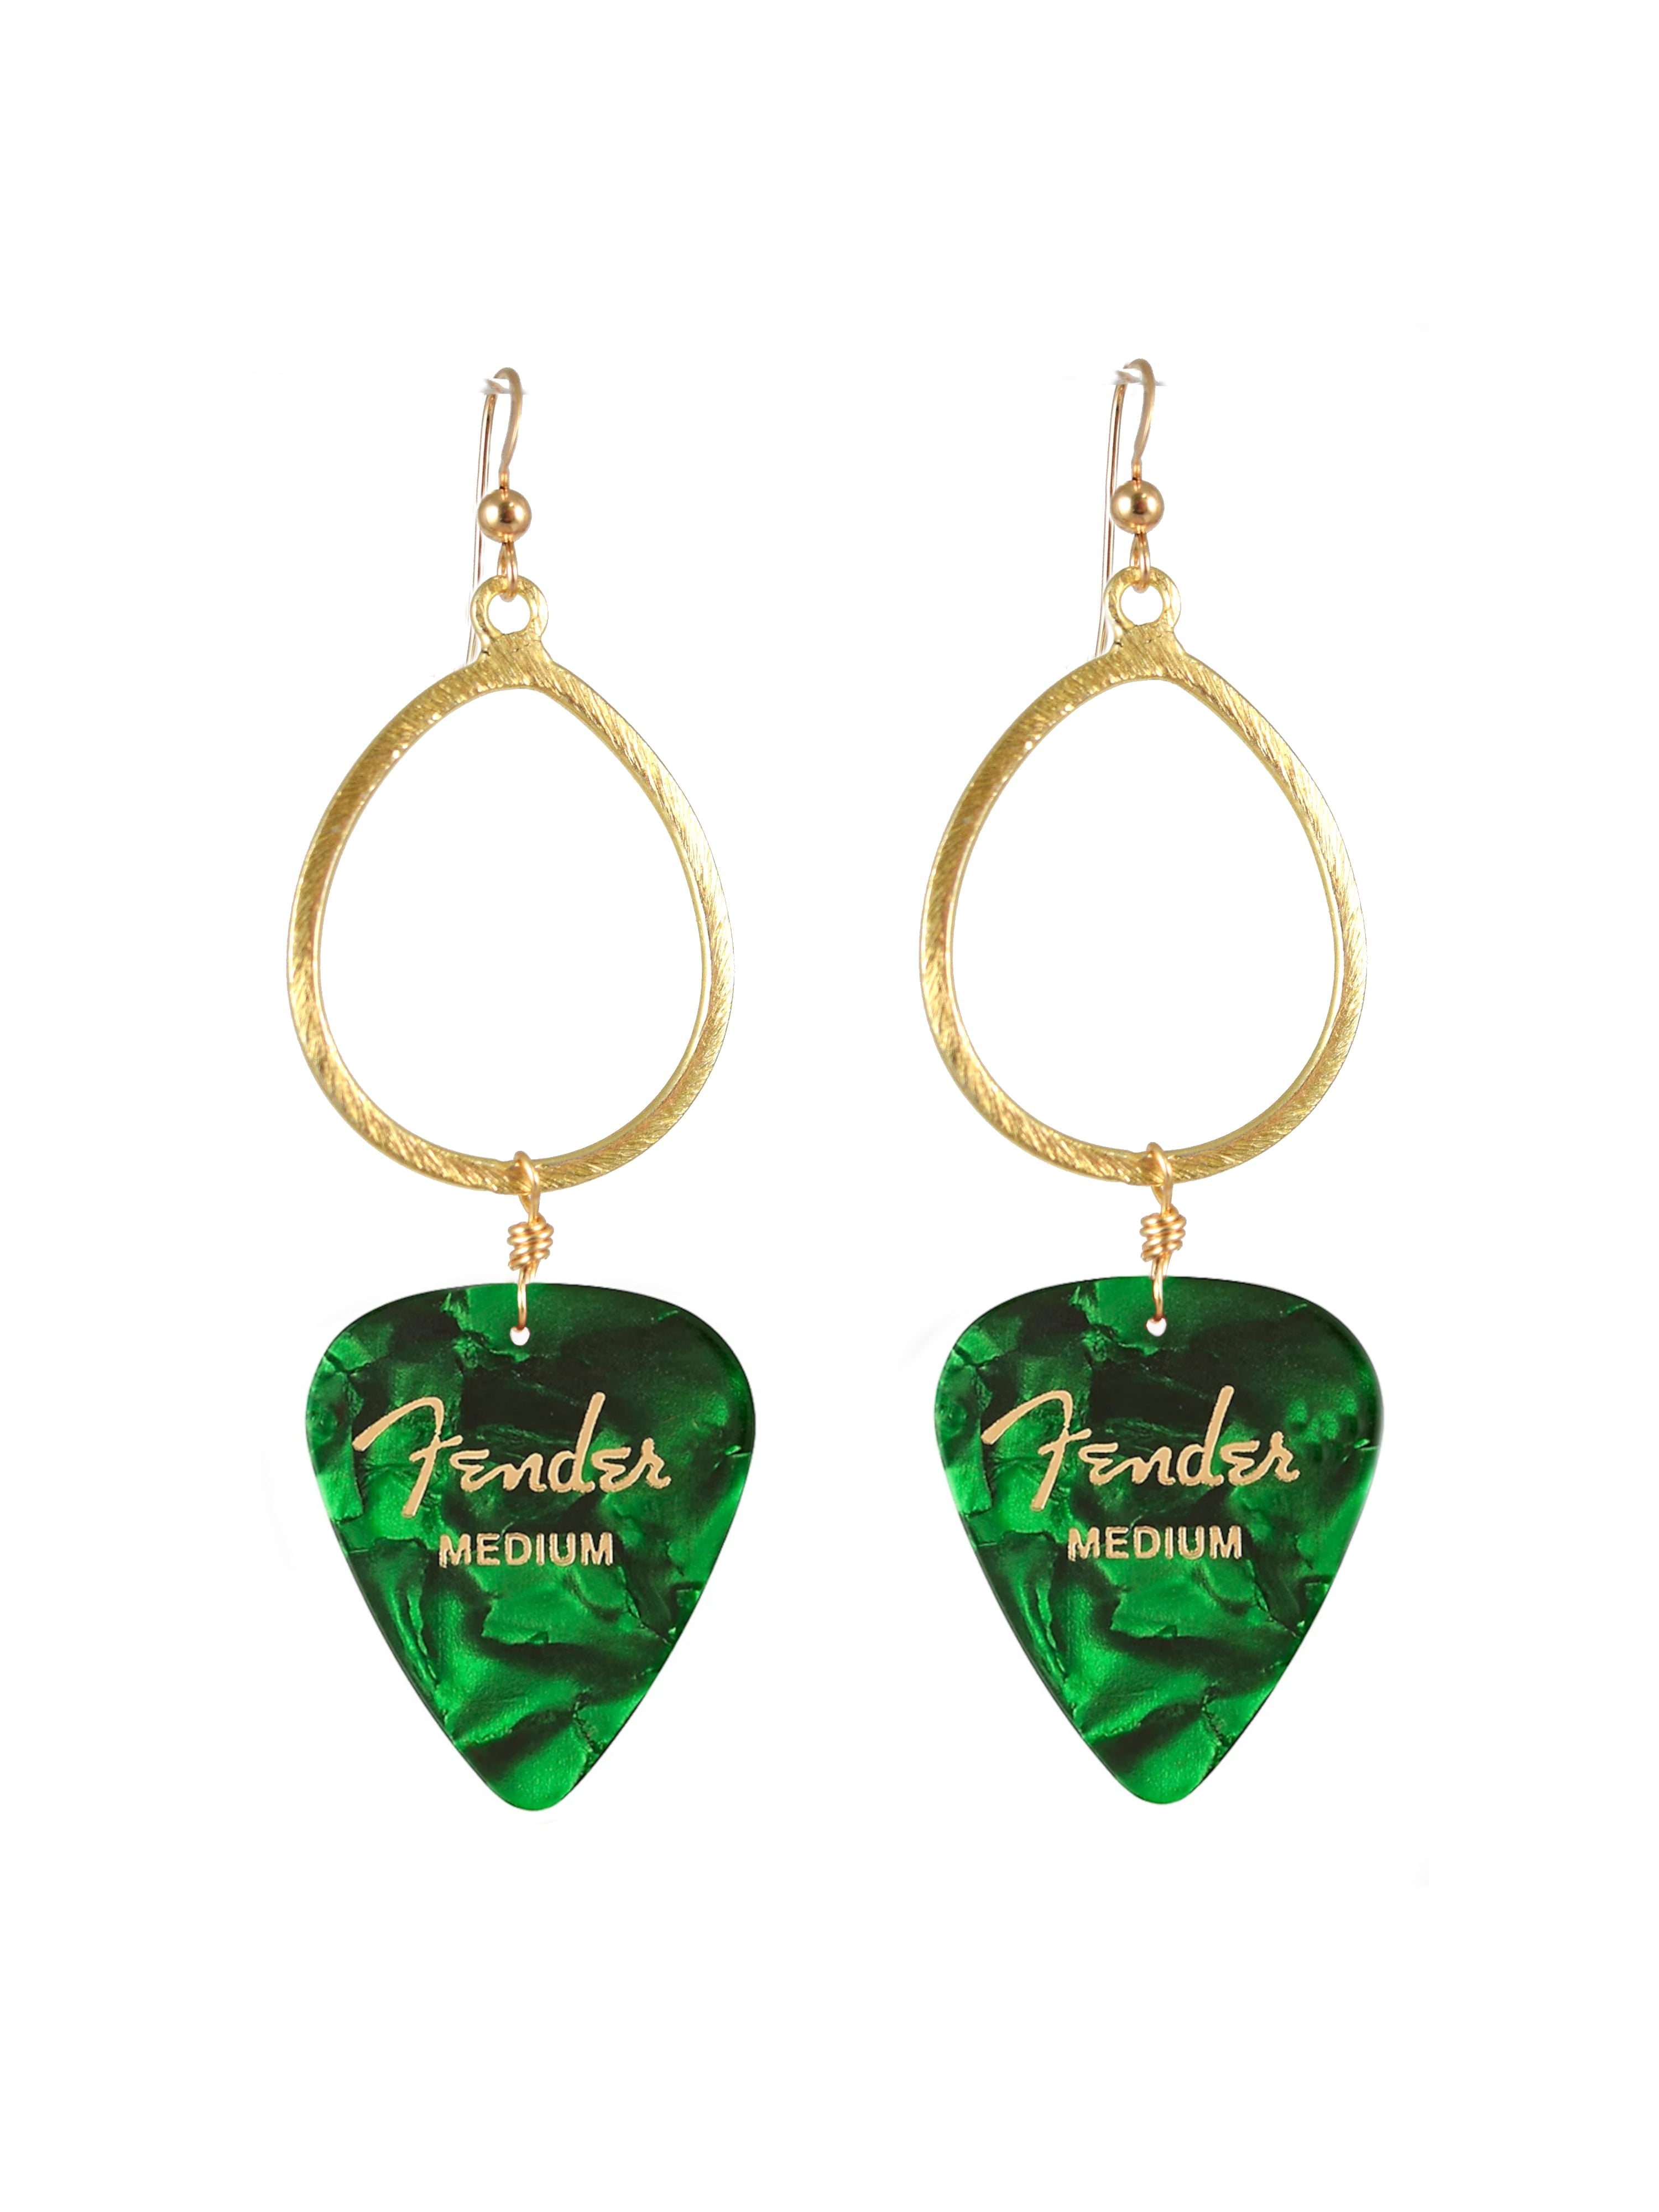 Guitar Pick Earrings in Emerald